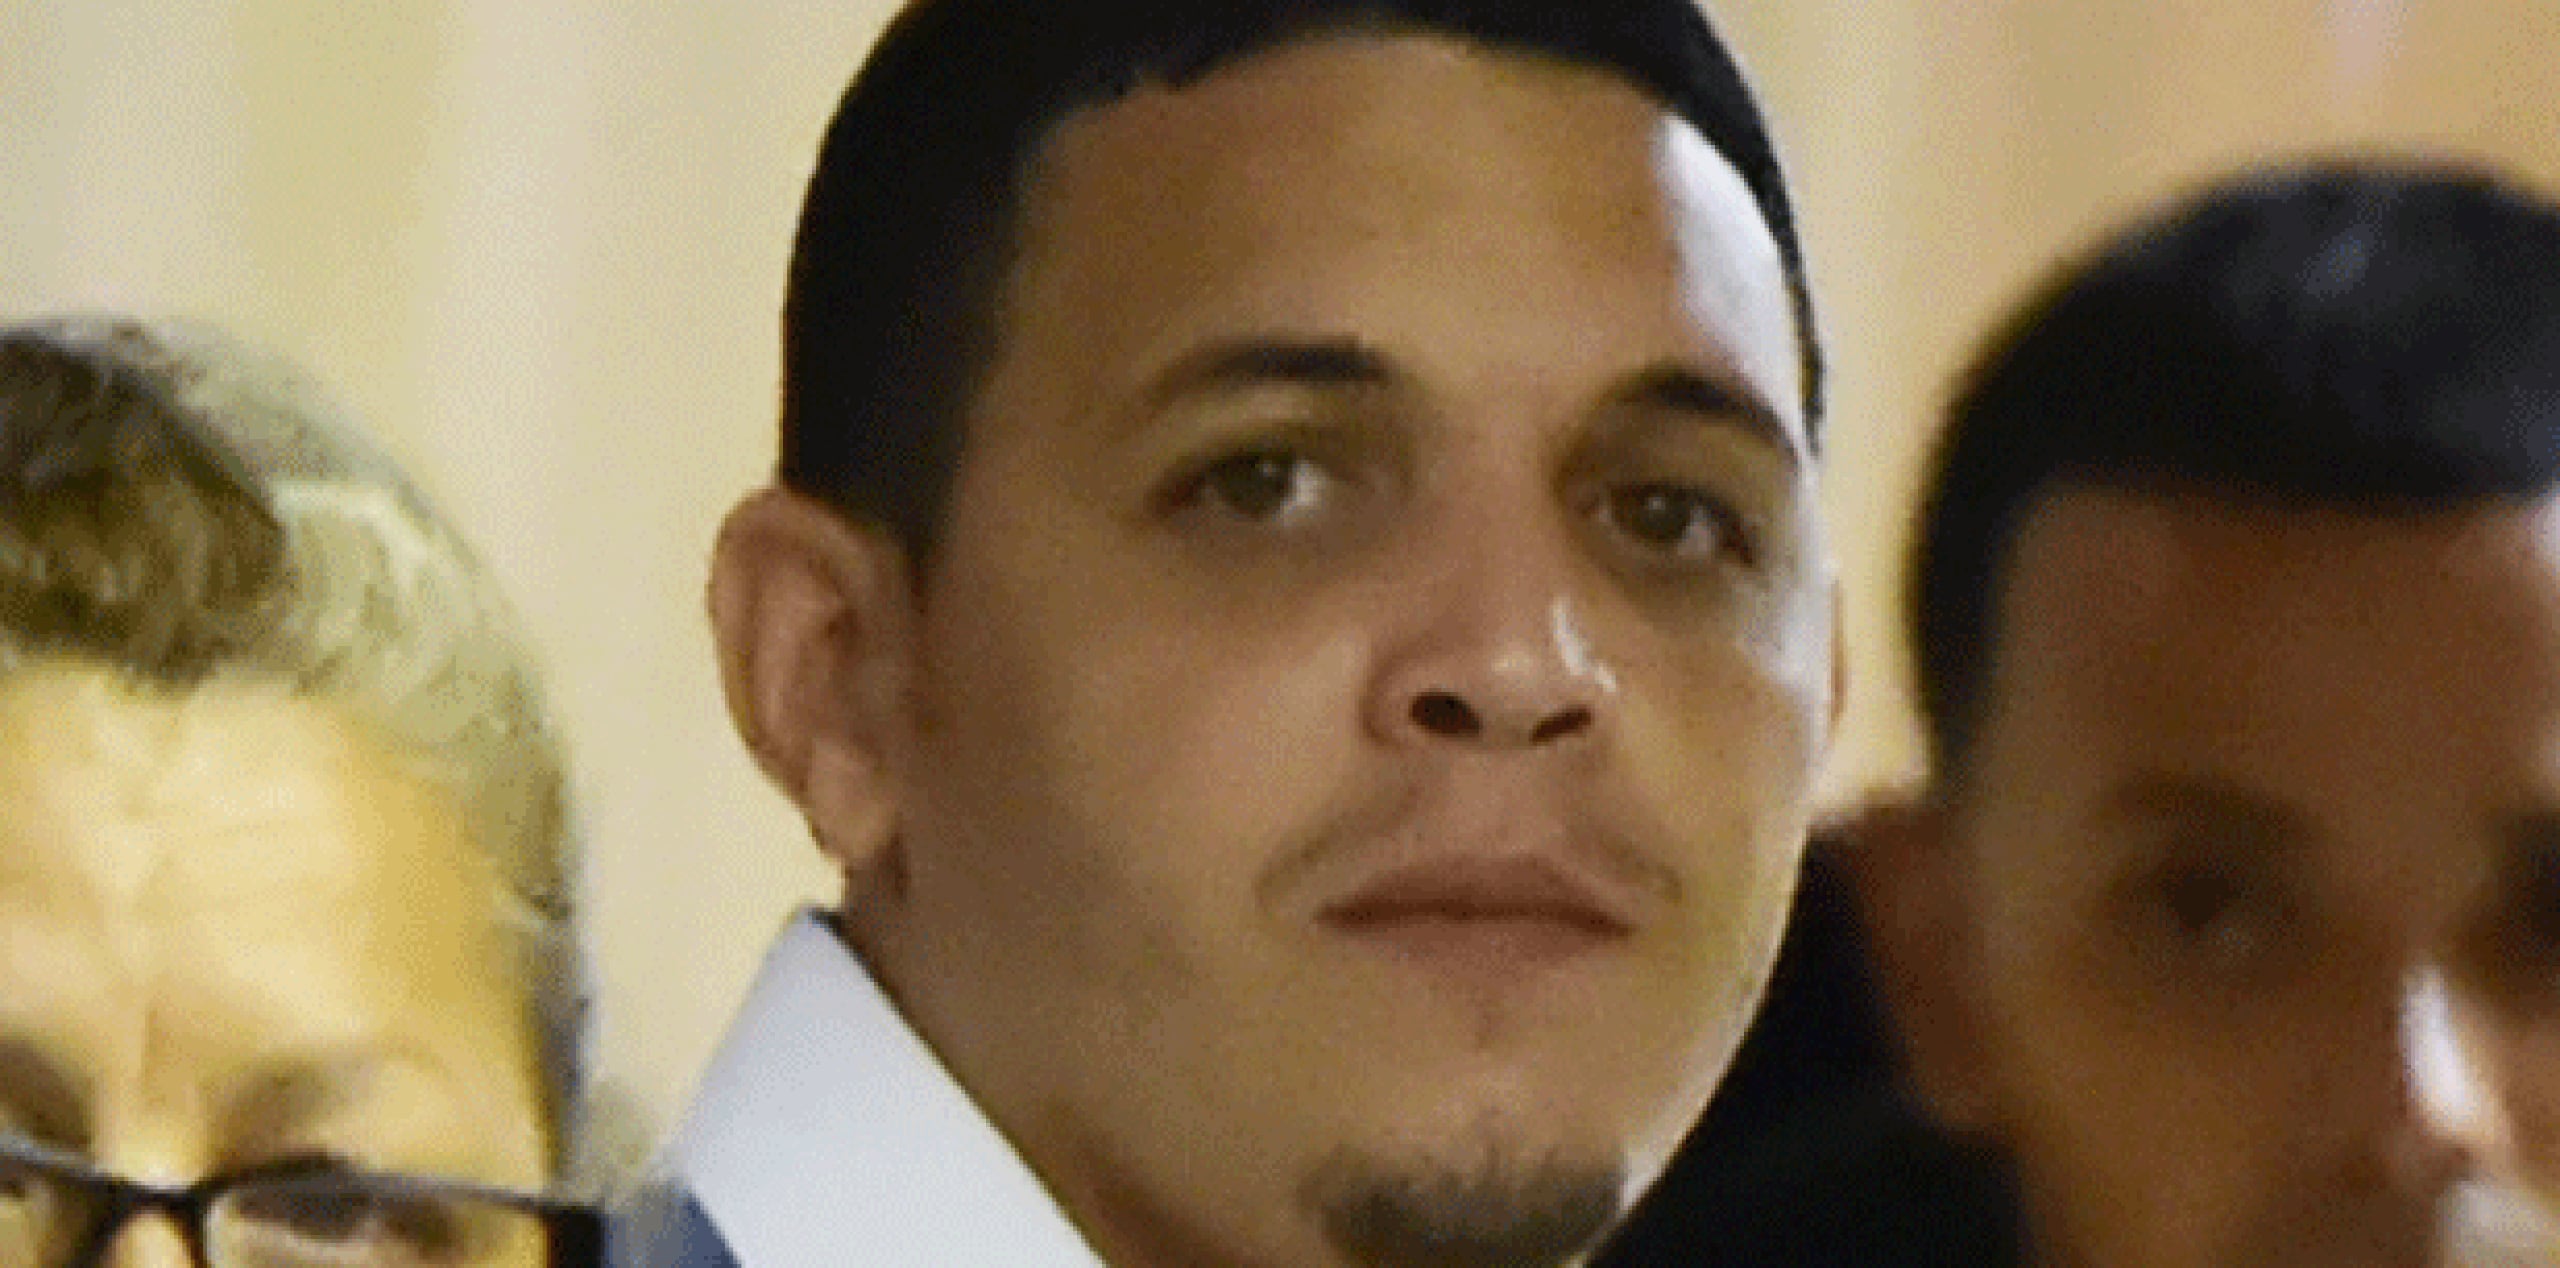 Edwin Miguel Boria Ramos, uno de los acusados en este caso (luis.alcaladelolmo@gfrmedia.com)